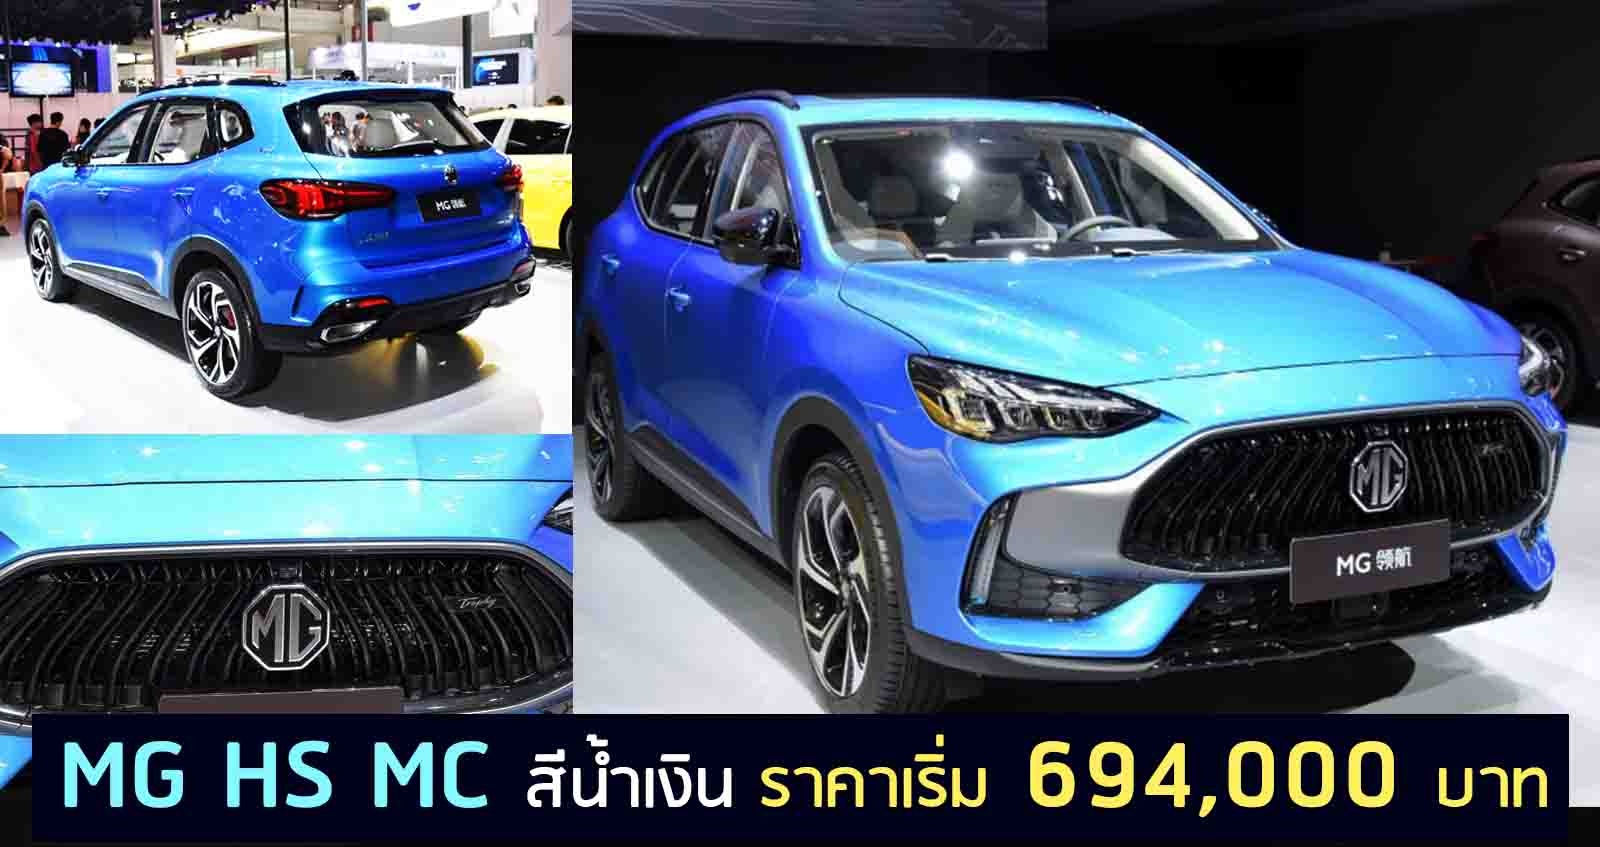 MG HS MC สีน้ำเงิน ราคาเริ่ม 694,000 บาท ขายในจีน 17 ตุลาคมนี้